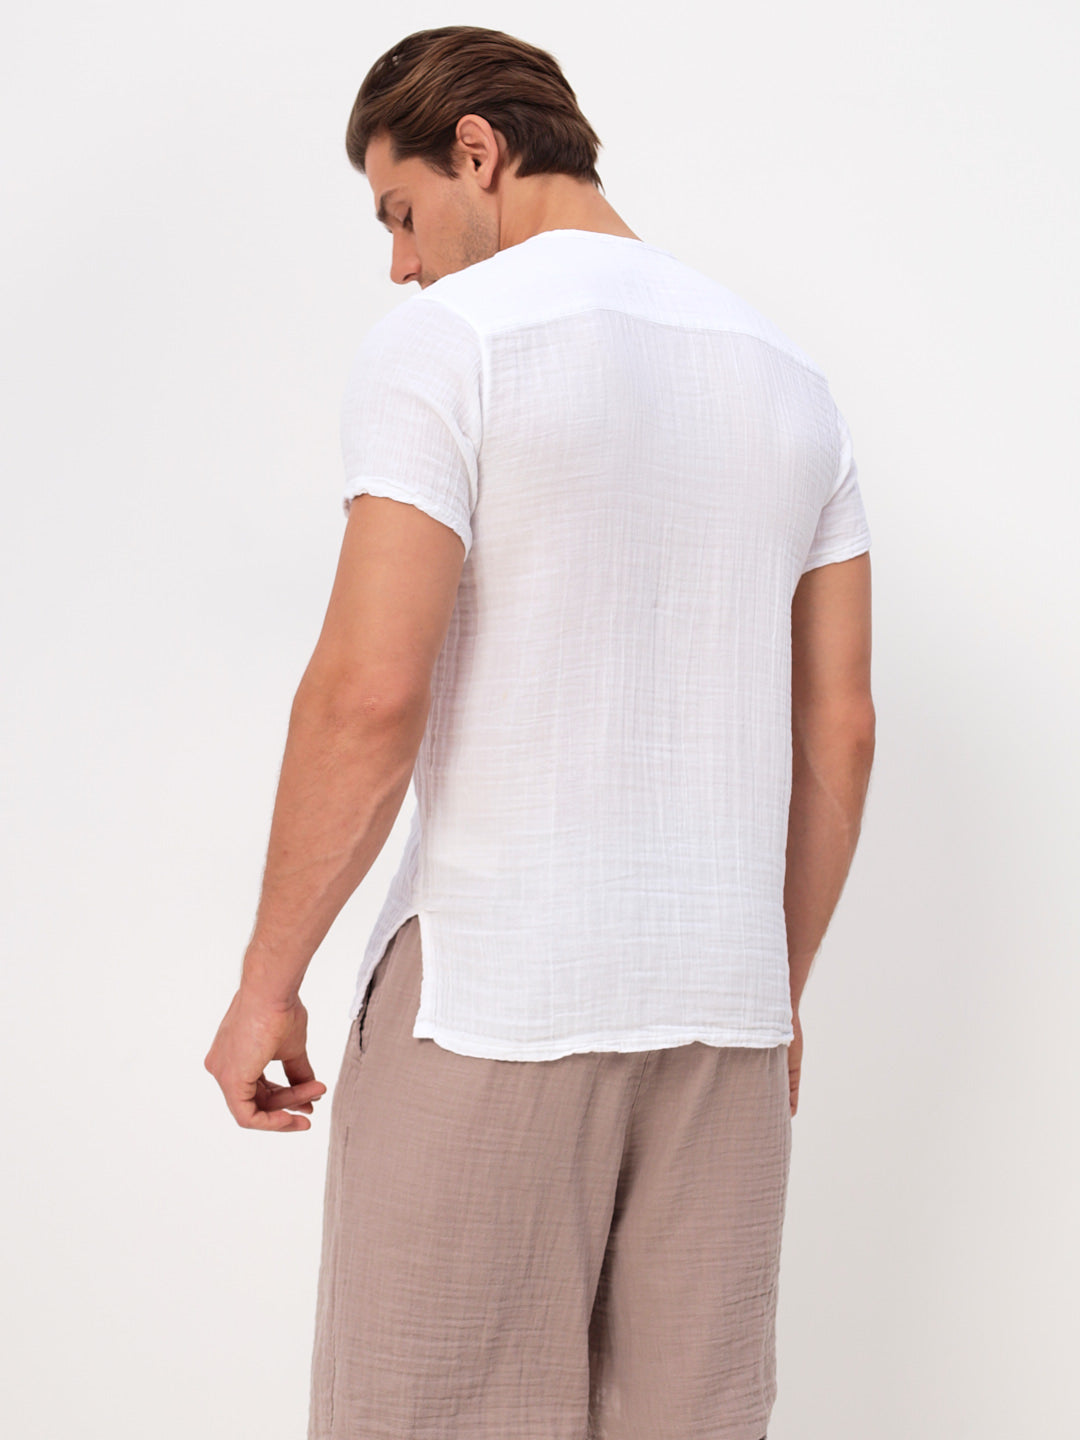 Herren Sommer Mode T-Shirt aus lässige Musselin Freizeit LMS-6452 Weiß